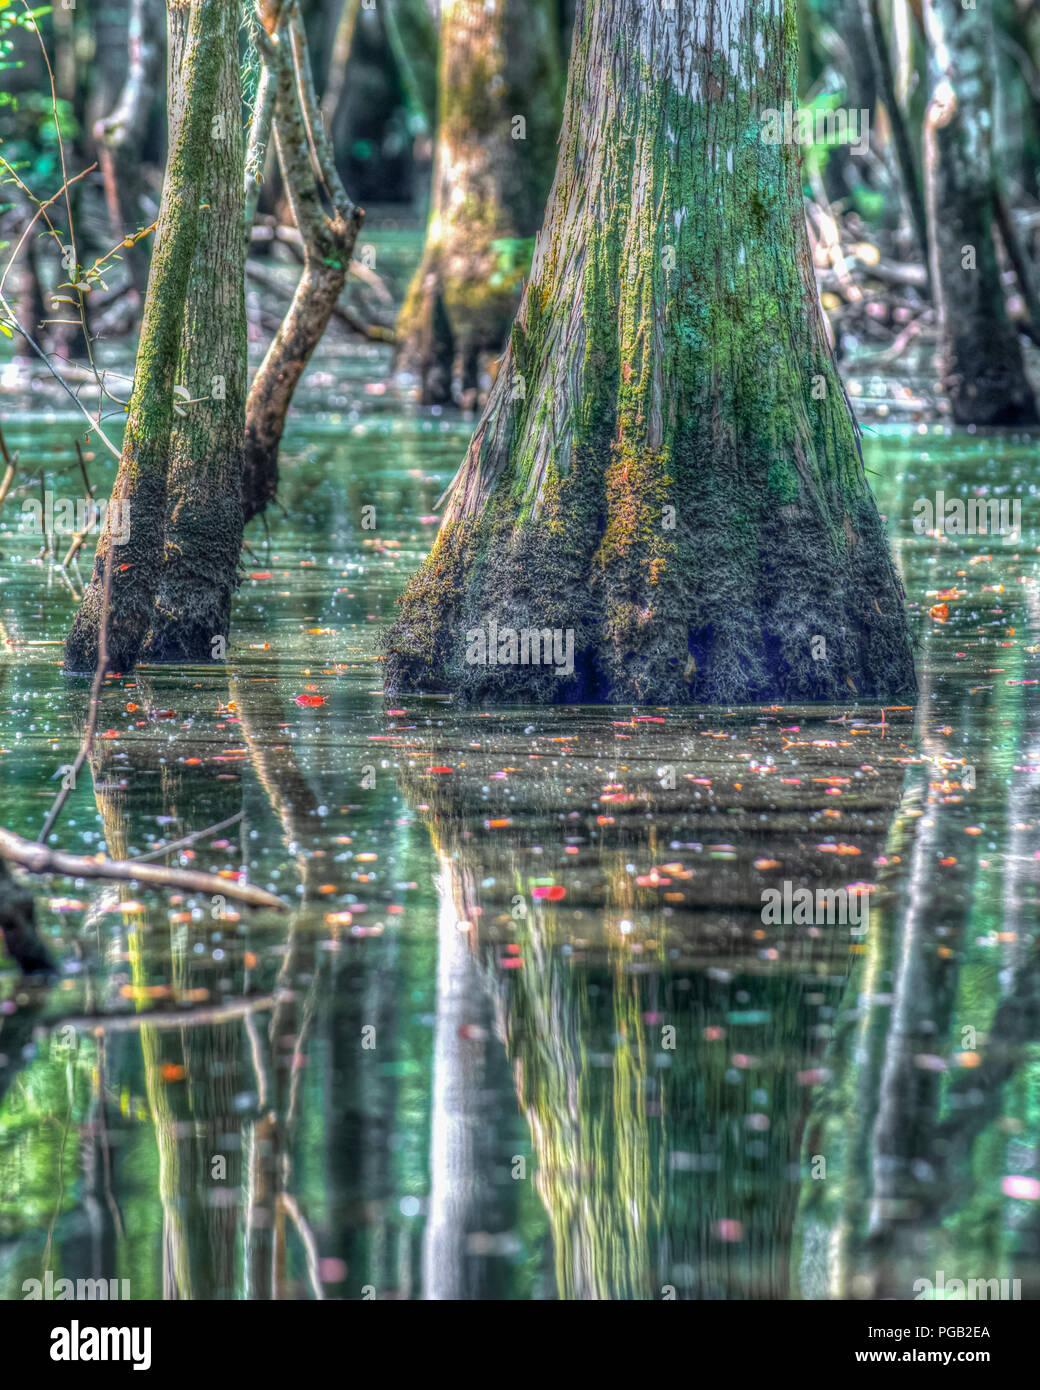 Beaux arbres marais de cyprès chauve en Caroline du Nord États-unis - Réflexion de l'arbre dans le cadre tranquille de l'eau saumâtre - Shalotte river Banque D'Images